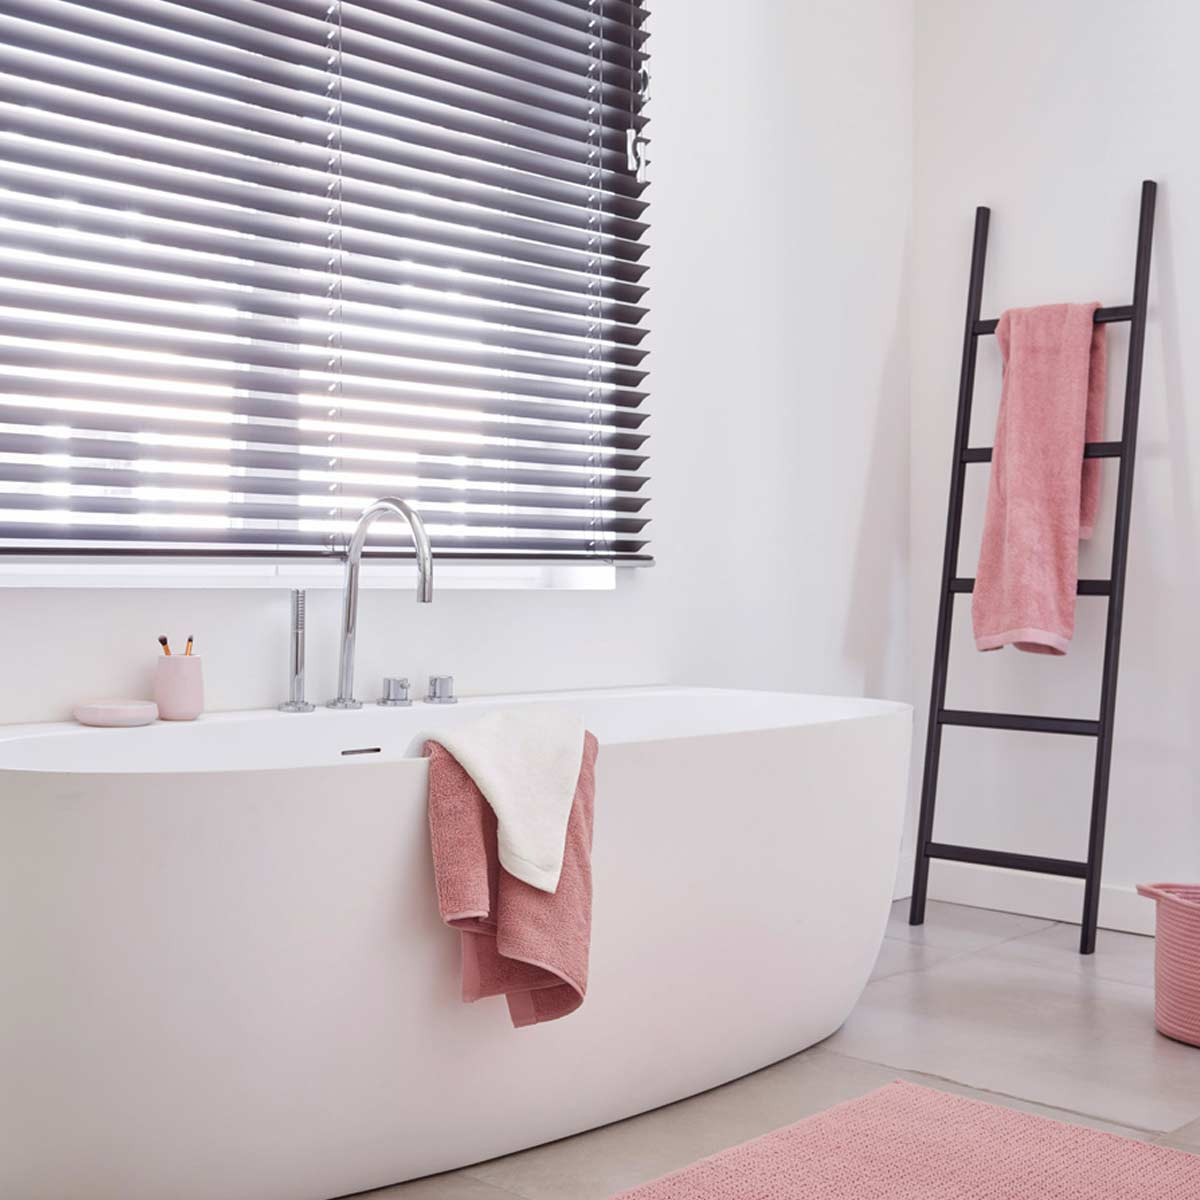 Bagno - vendita online mobili e accessori per il tuo bagno :: Accessori :: Scala  porta asciugamani SUEGIU-B